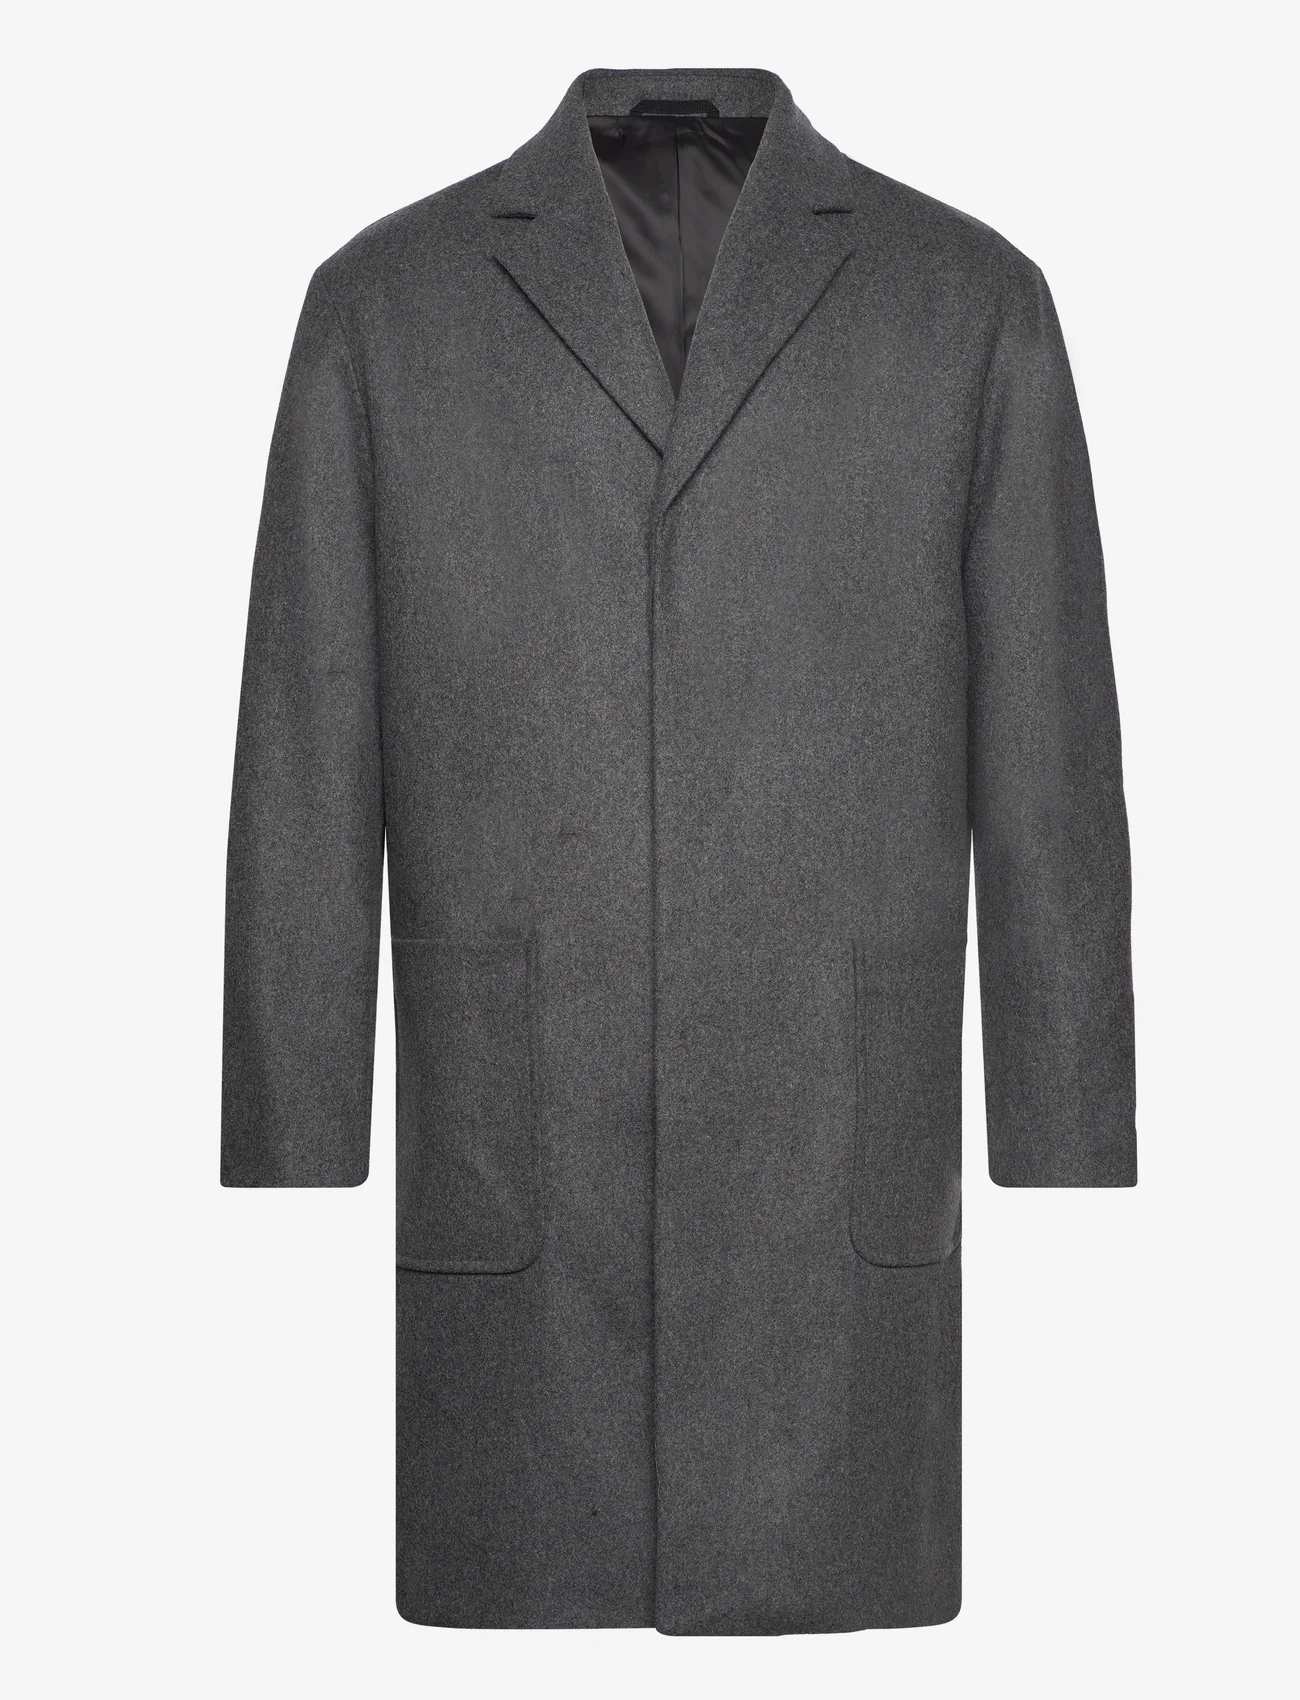 Calvin Klein - MODERN WOOL BLEND COAT - winterjassen - dark grey heather - 0